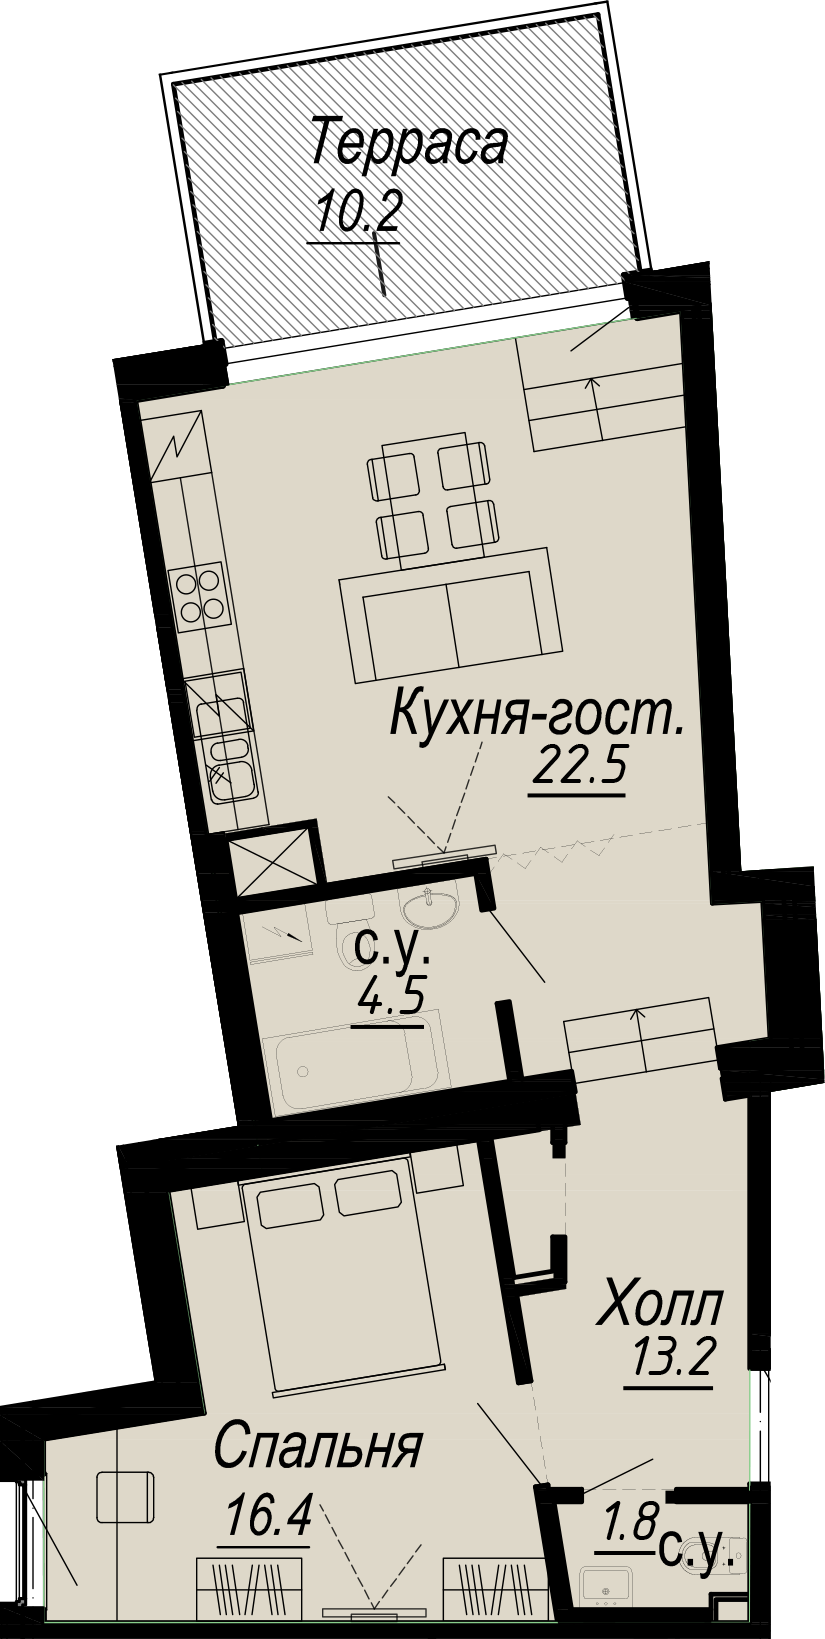 1-комнатная квартира  №18-6 в Meltzer Hall: 63.5 м², этаж 6 - купить в Санкт-Петербурге